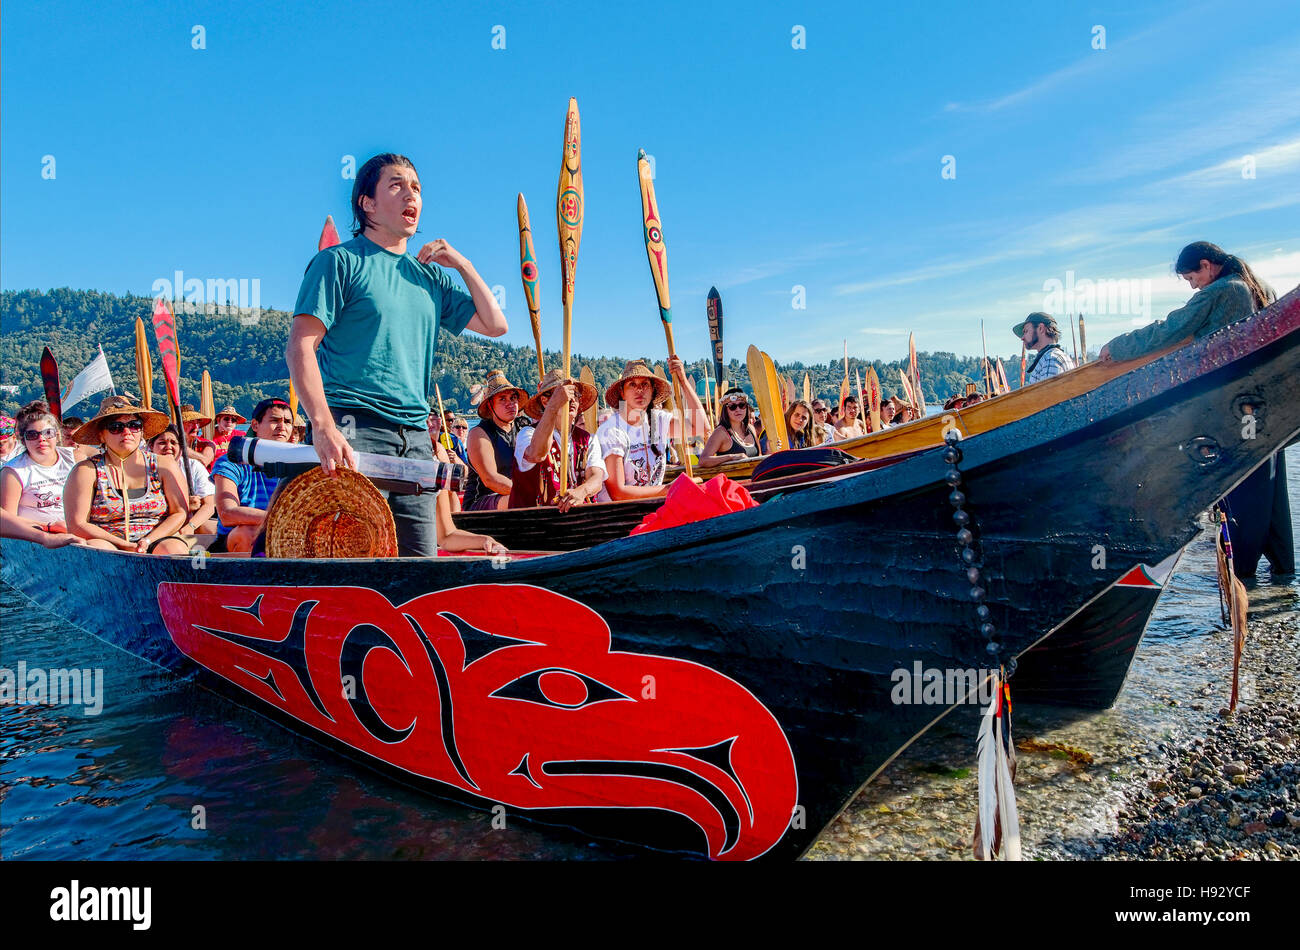 Dustin Rivières, nation de Squamish, Rassemblement de canots pour protéger la mer des Salish, attendant Bienvenue chez Whey-ah-Wichen N. Vancouver. Banque D'Images